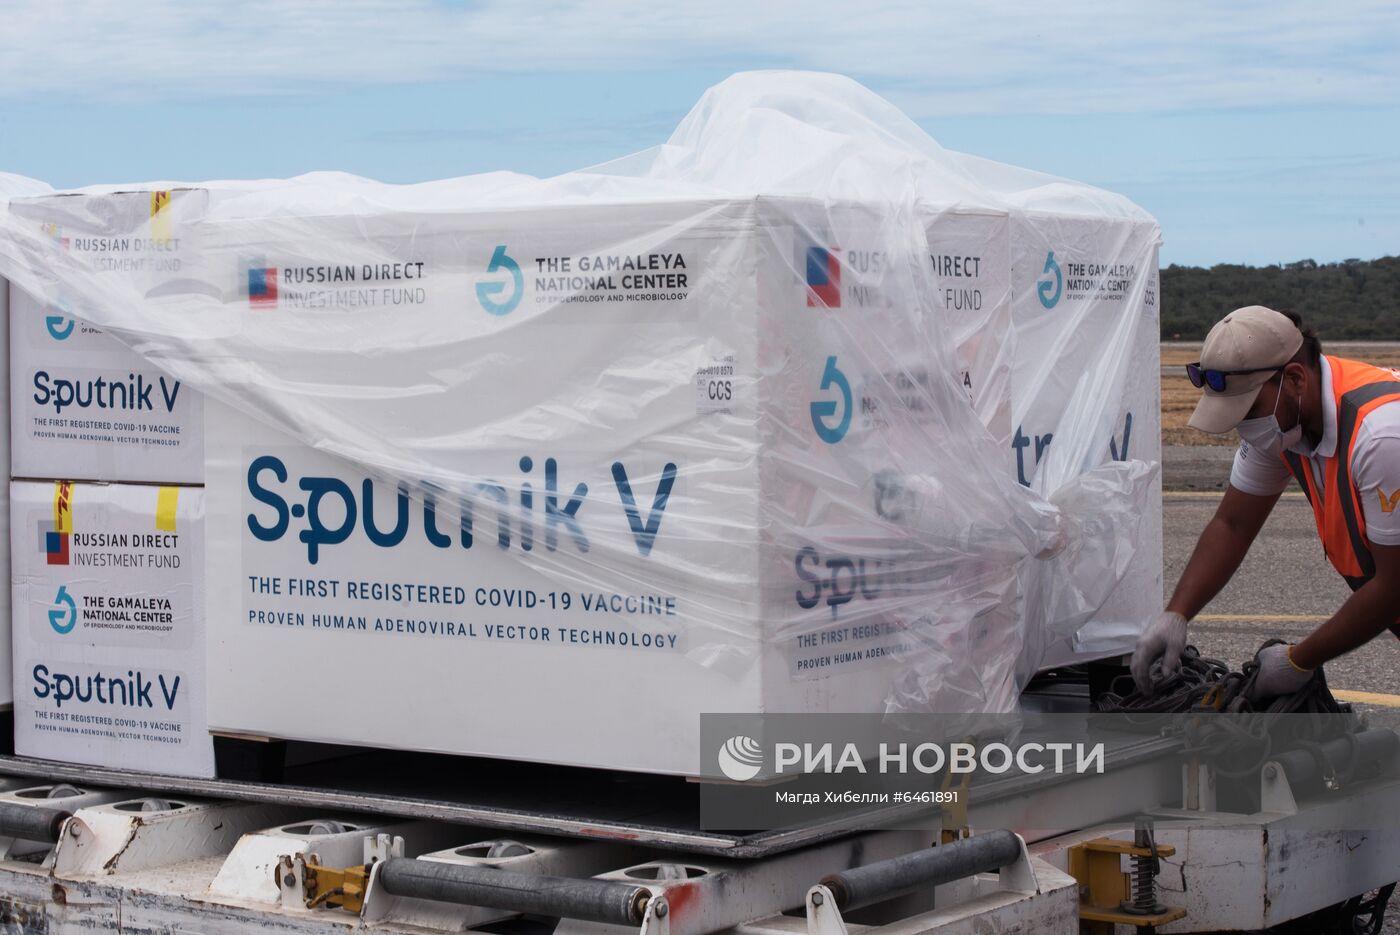   Российская вакцина "Спутник V" прибыла в Венесуэлу